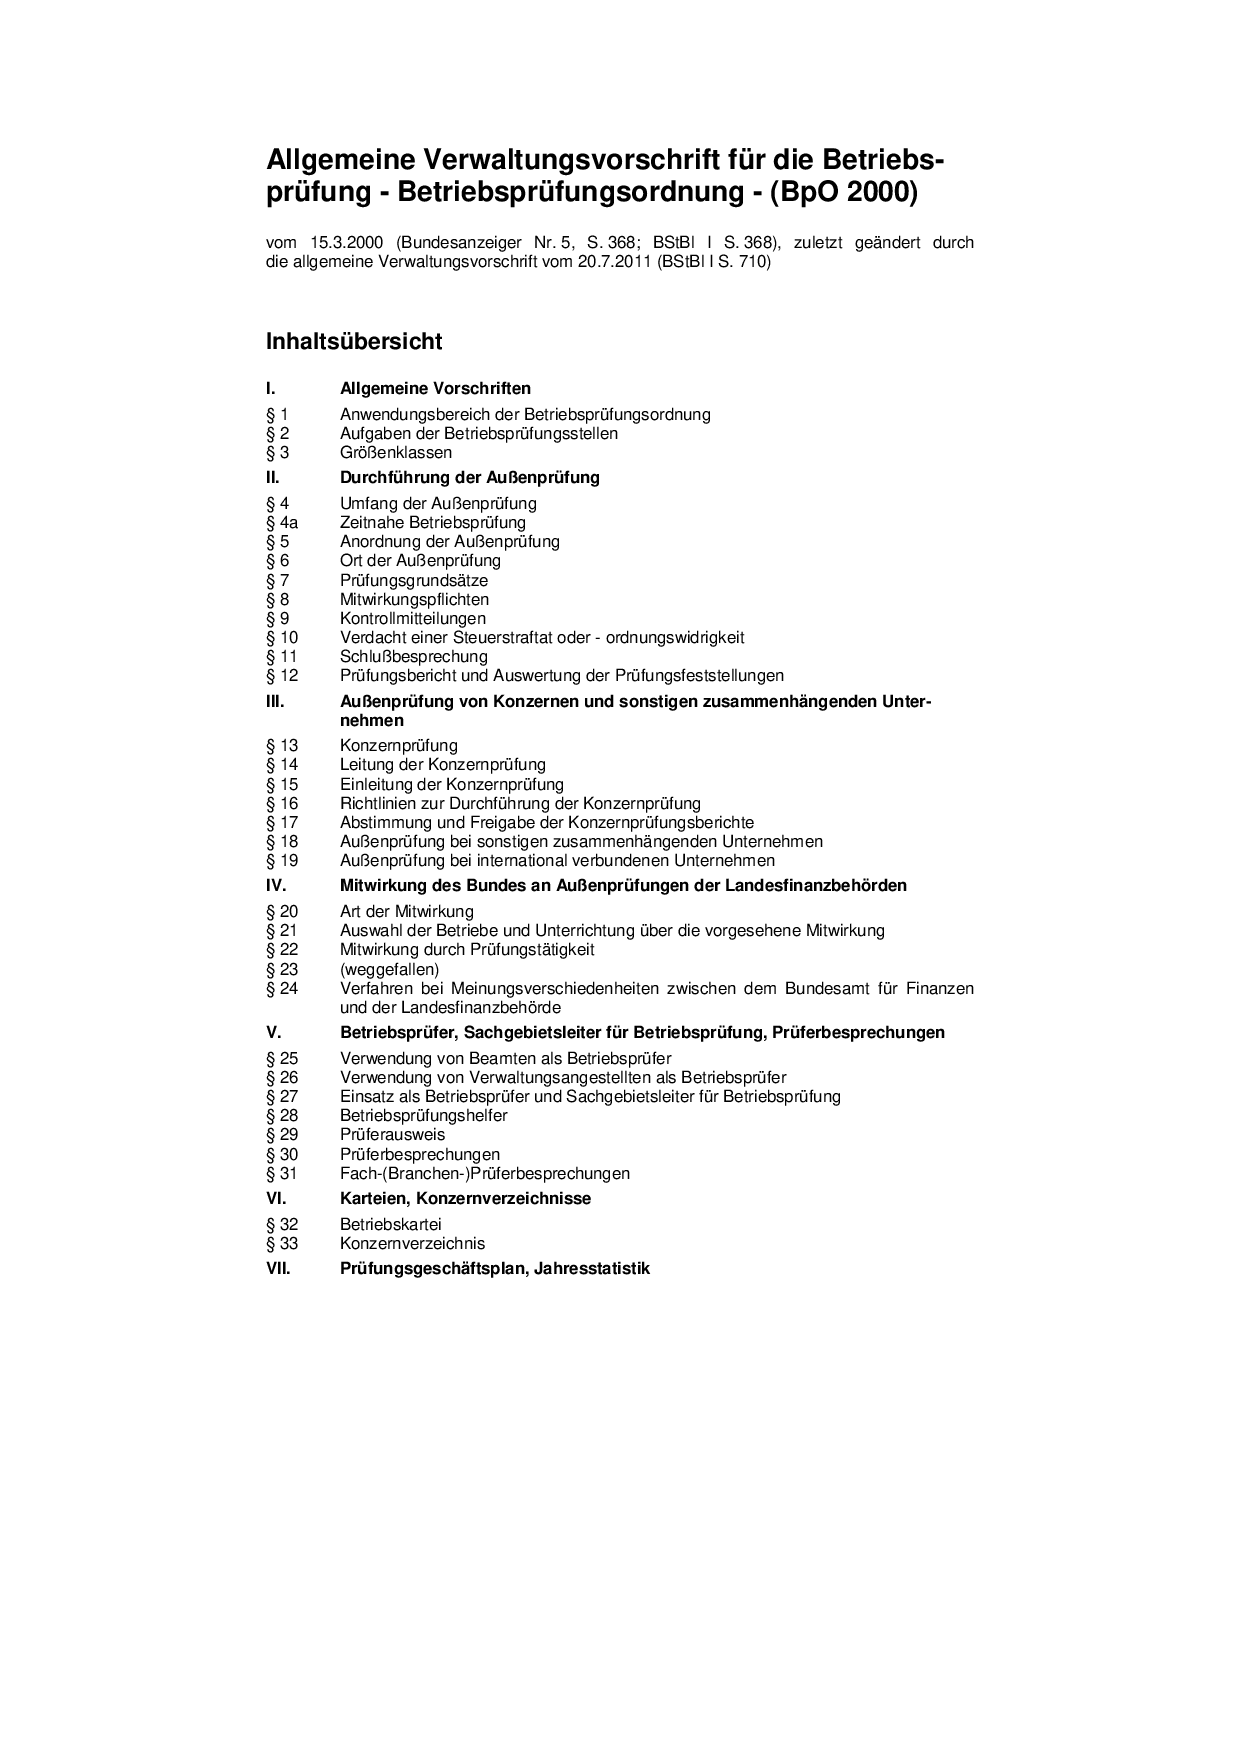 Allgemeine Verwaltungsvorschrift für die Betriebs-prüfung - Betriebsprüfungsordnung - (BpO 2000)
vom 15.3.2000 (Bundesanzeiger Nr. 5, S. 368; BStBl I S. 368), zuletzt geändert durch die allgemeine Verwaltungsvorschrift vom 20.7.2011 (BStBl I S. 710)